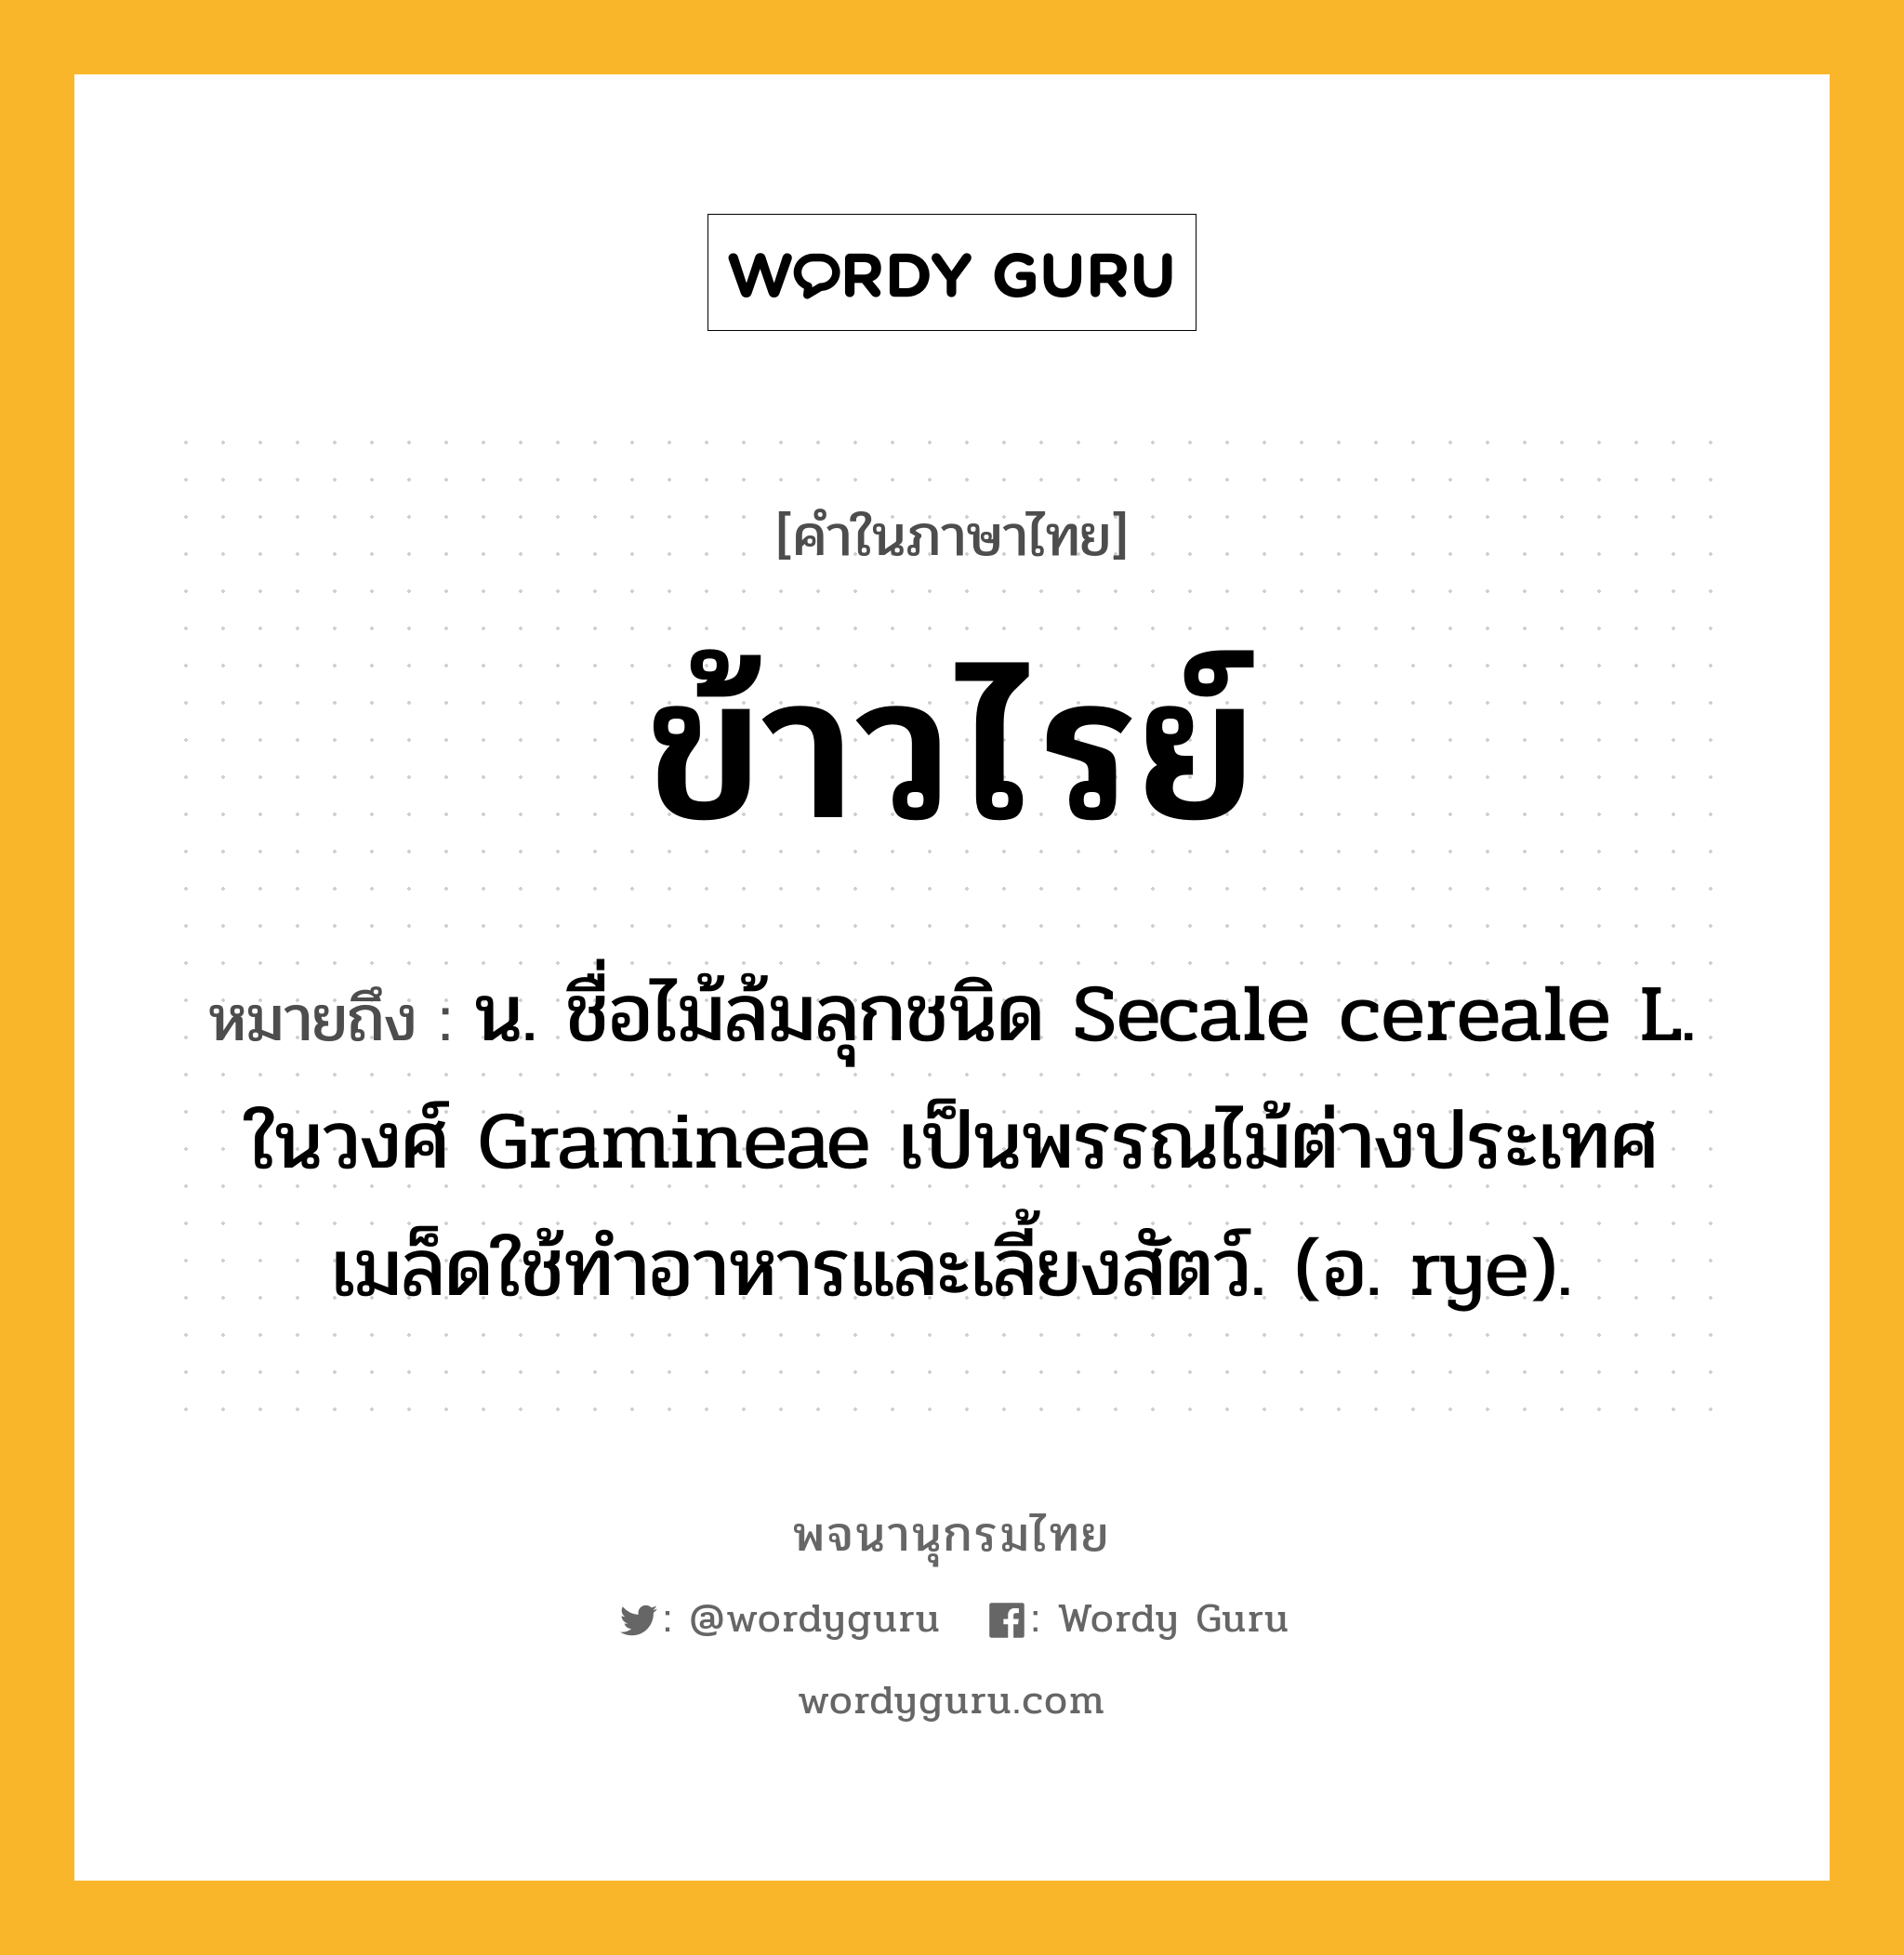 ข้าวไรย์ หมายถึงอะไร?, คำในภาษาไทย ข้าวไรย์ หมายถึง น. ชื่อไม้ล้มลุกชนิด Secale cereale L. ในวงศ์ Gramineae เป็นพรรณไม้ต่างประเทศ เมล็ดใช้ทําอาหารและเลี้ยงสัตว์. (อ. rye).